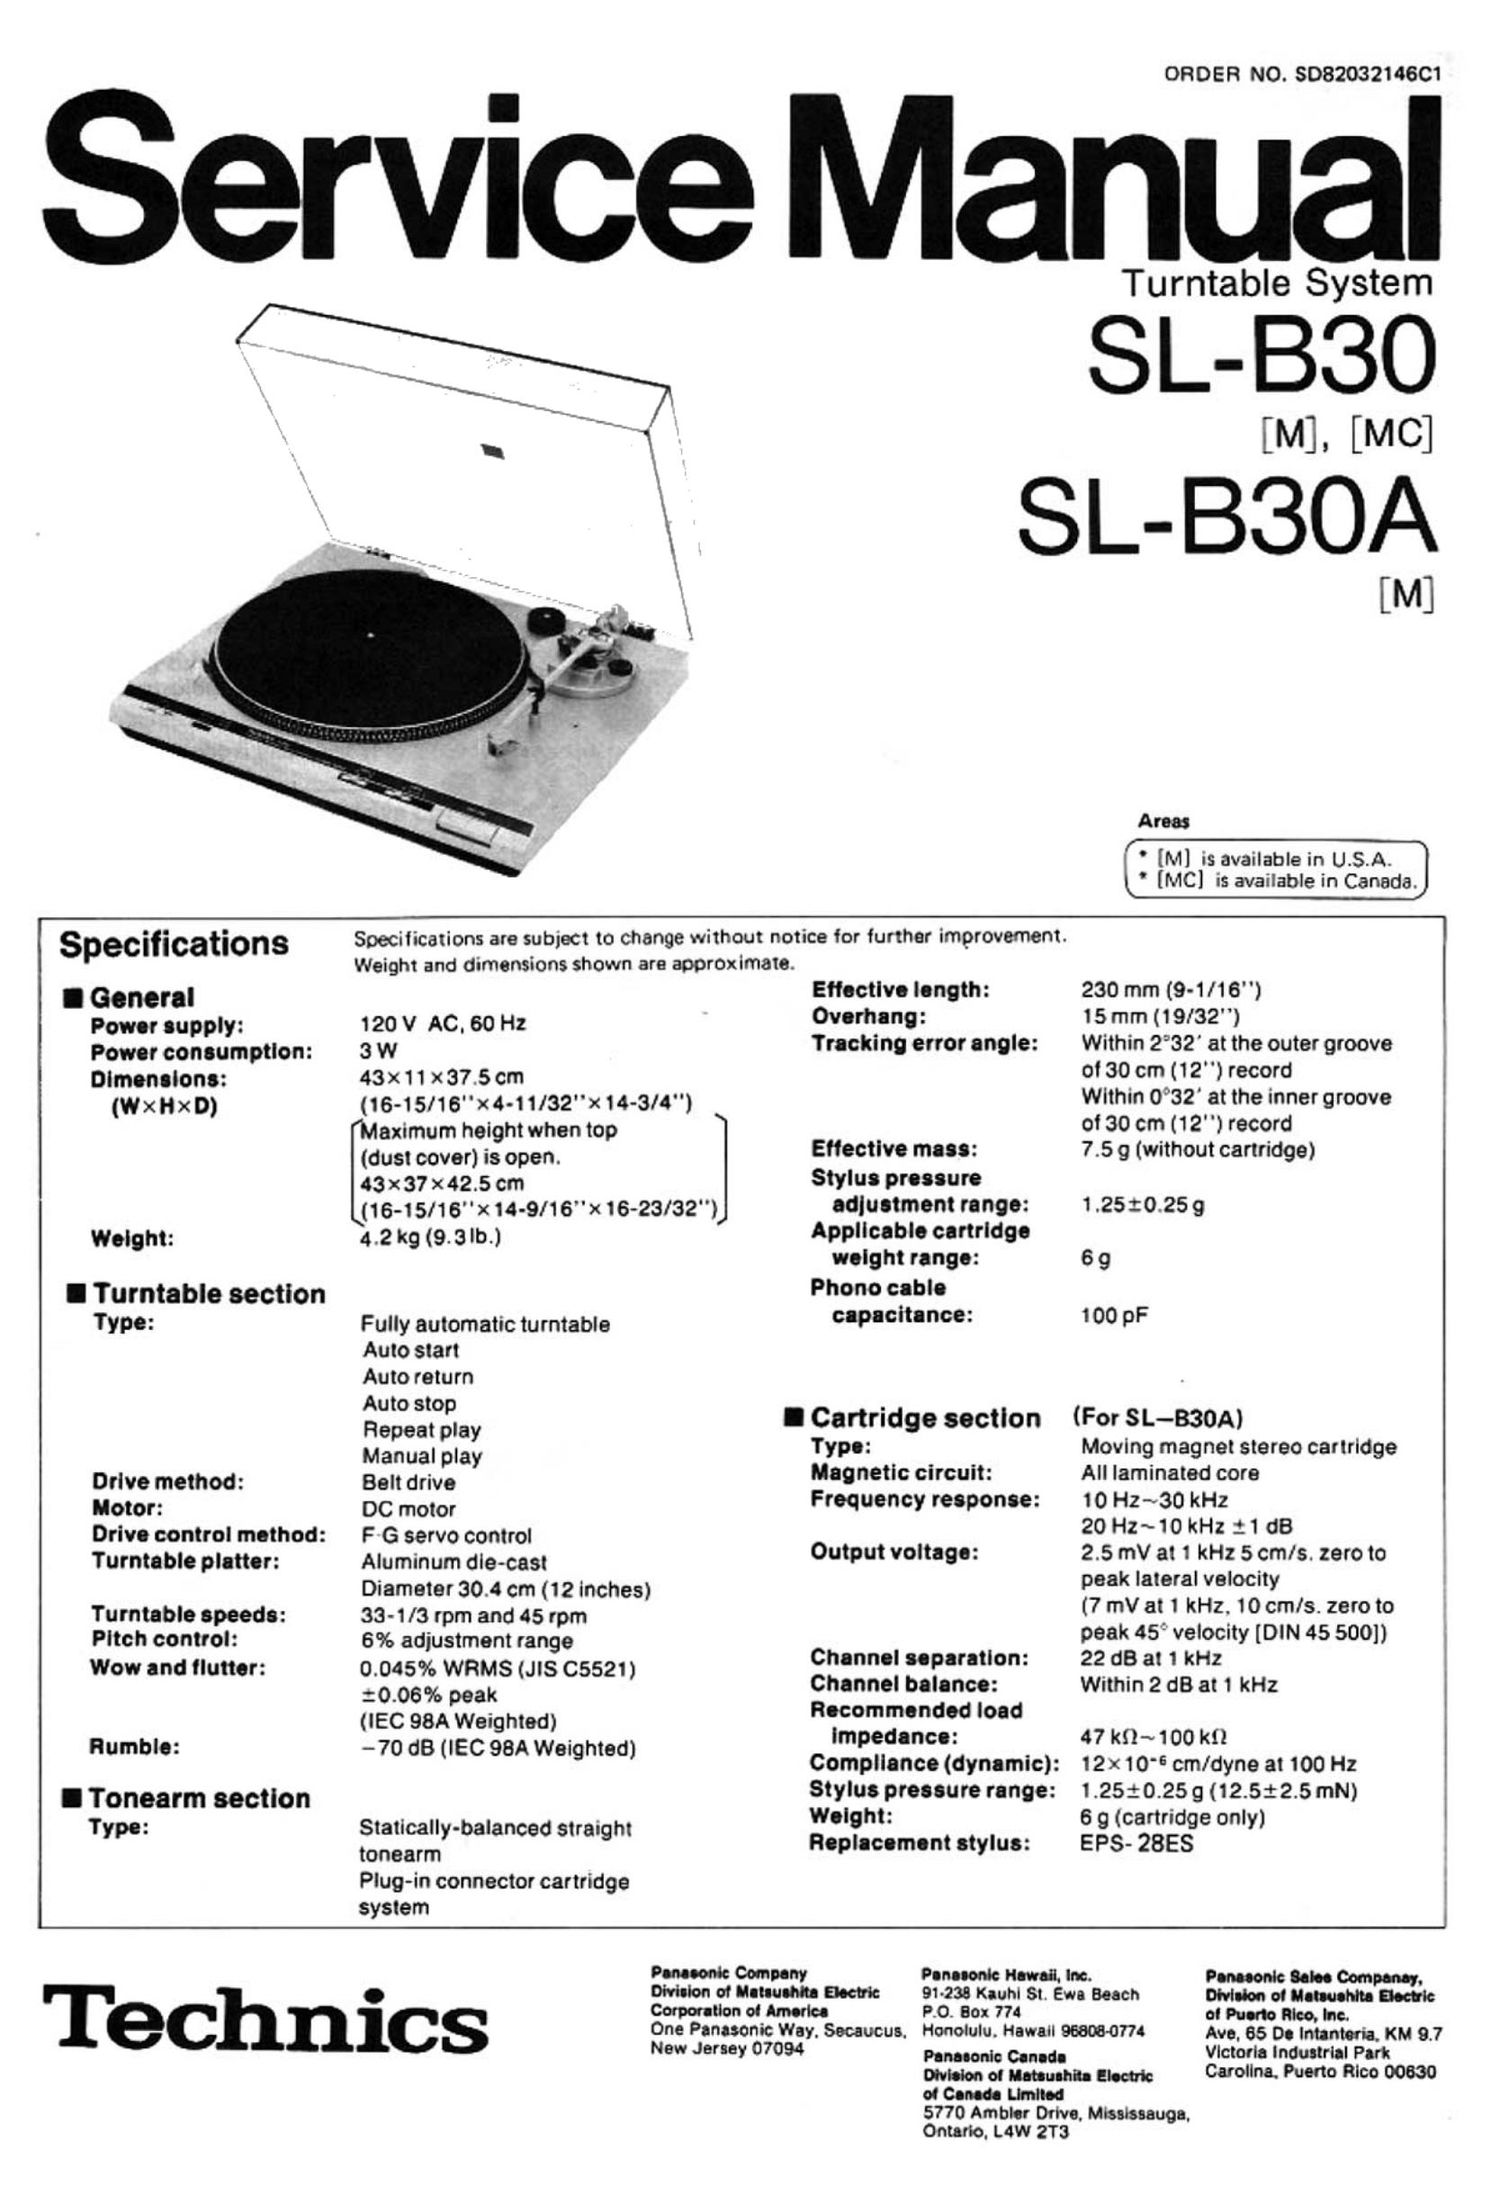 Technics SLB 30 A Service Manual